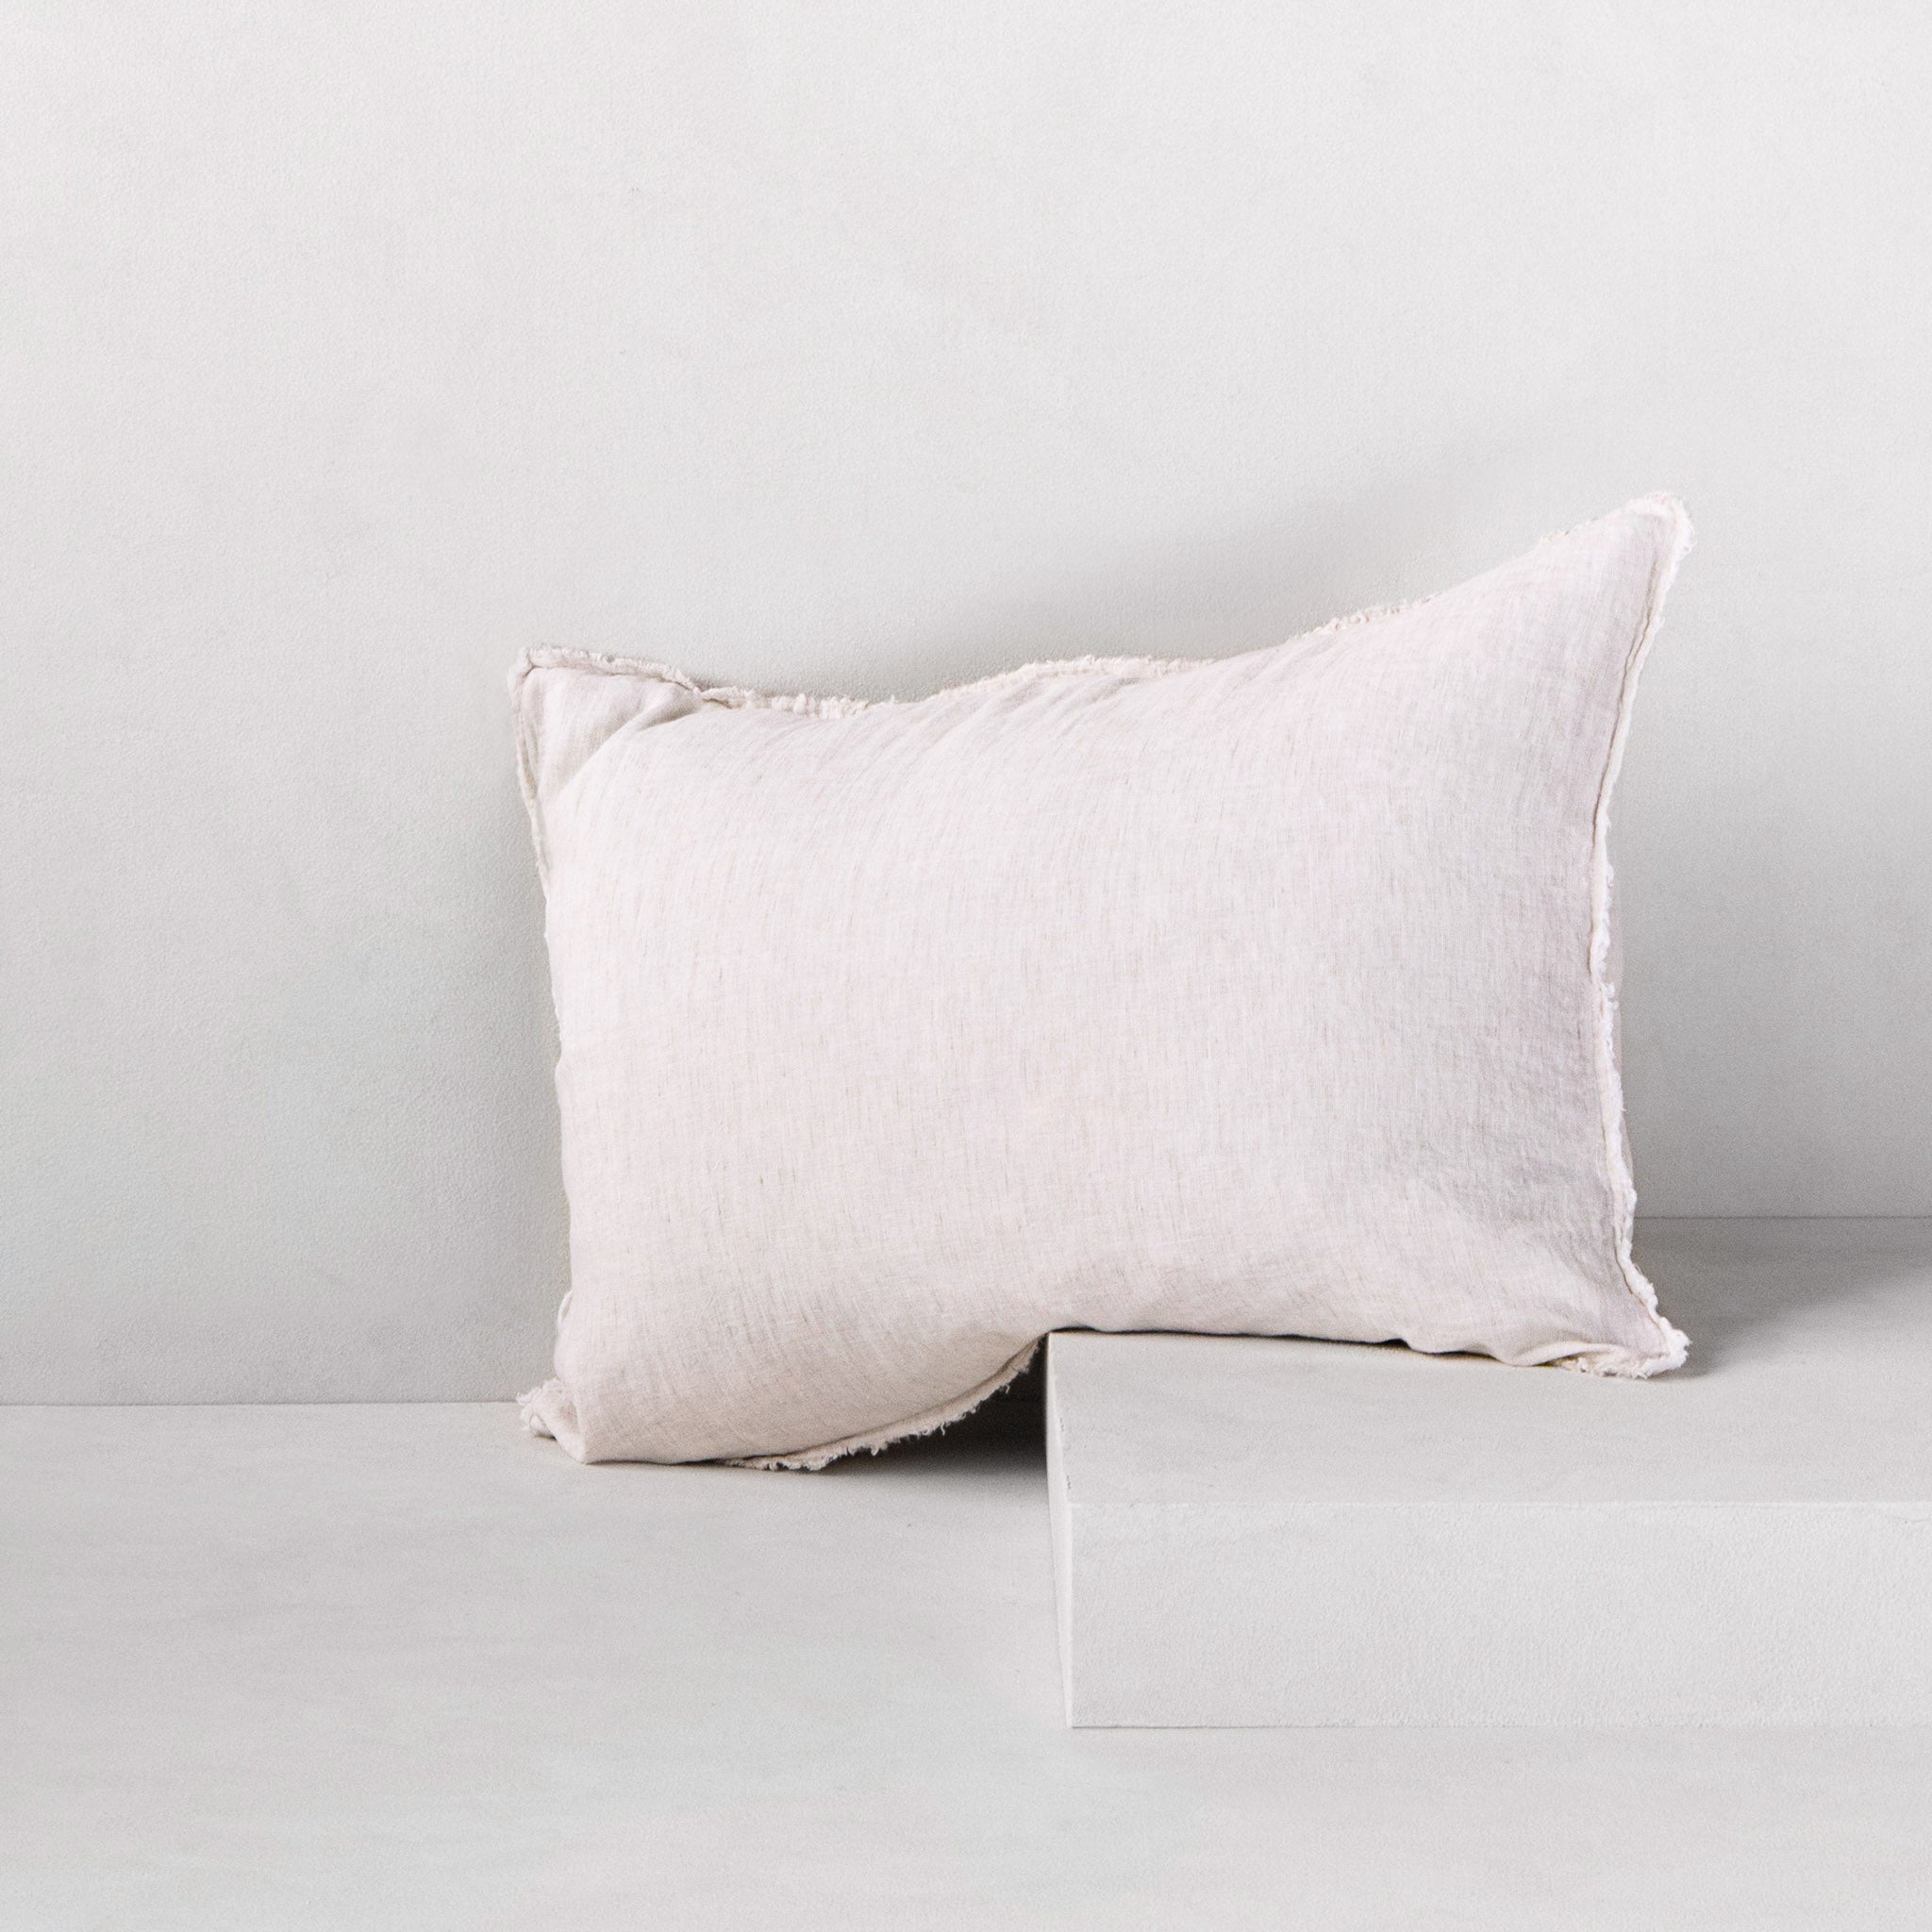 Flocca Linen Pillowcase | Pale Stone | Hale Mercantile Co.